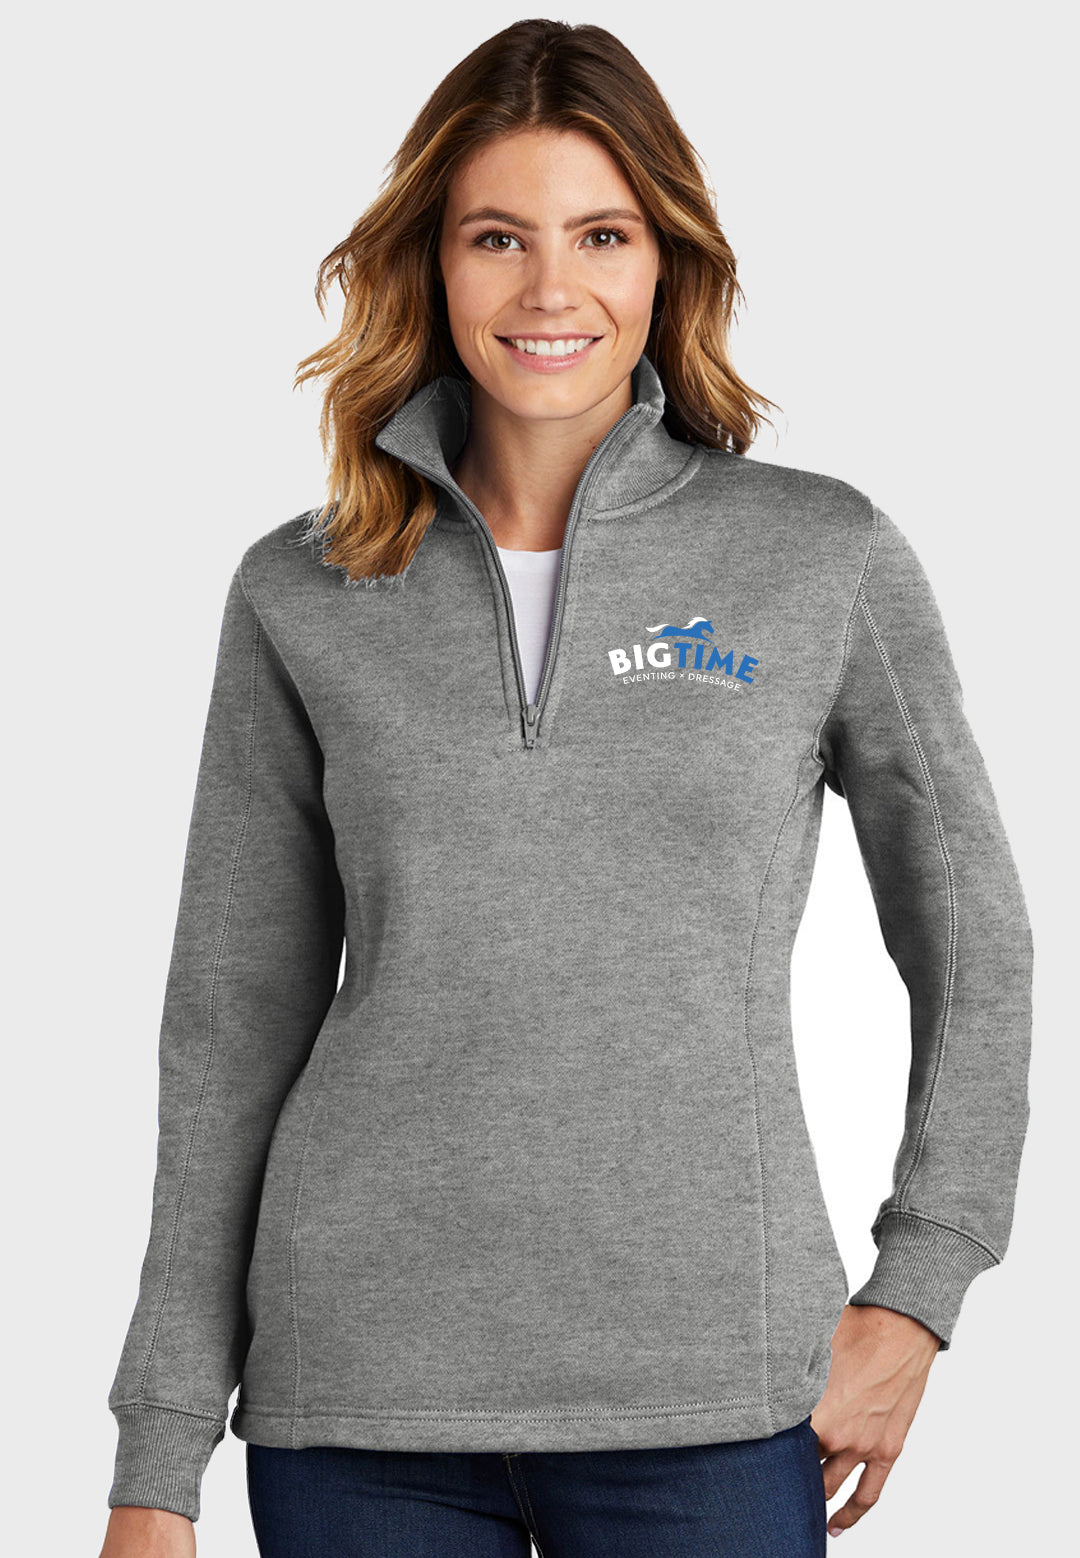 Bigtime Eventing Sport-Tek® Ladies 1/4-Zip Sweatshirt - Multiple Color Options